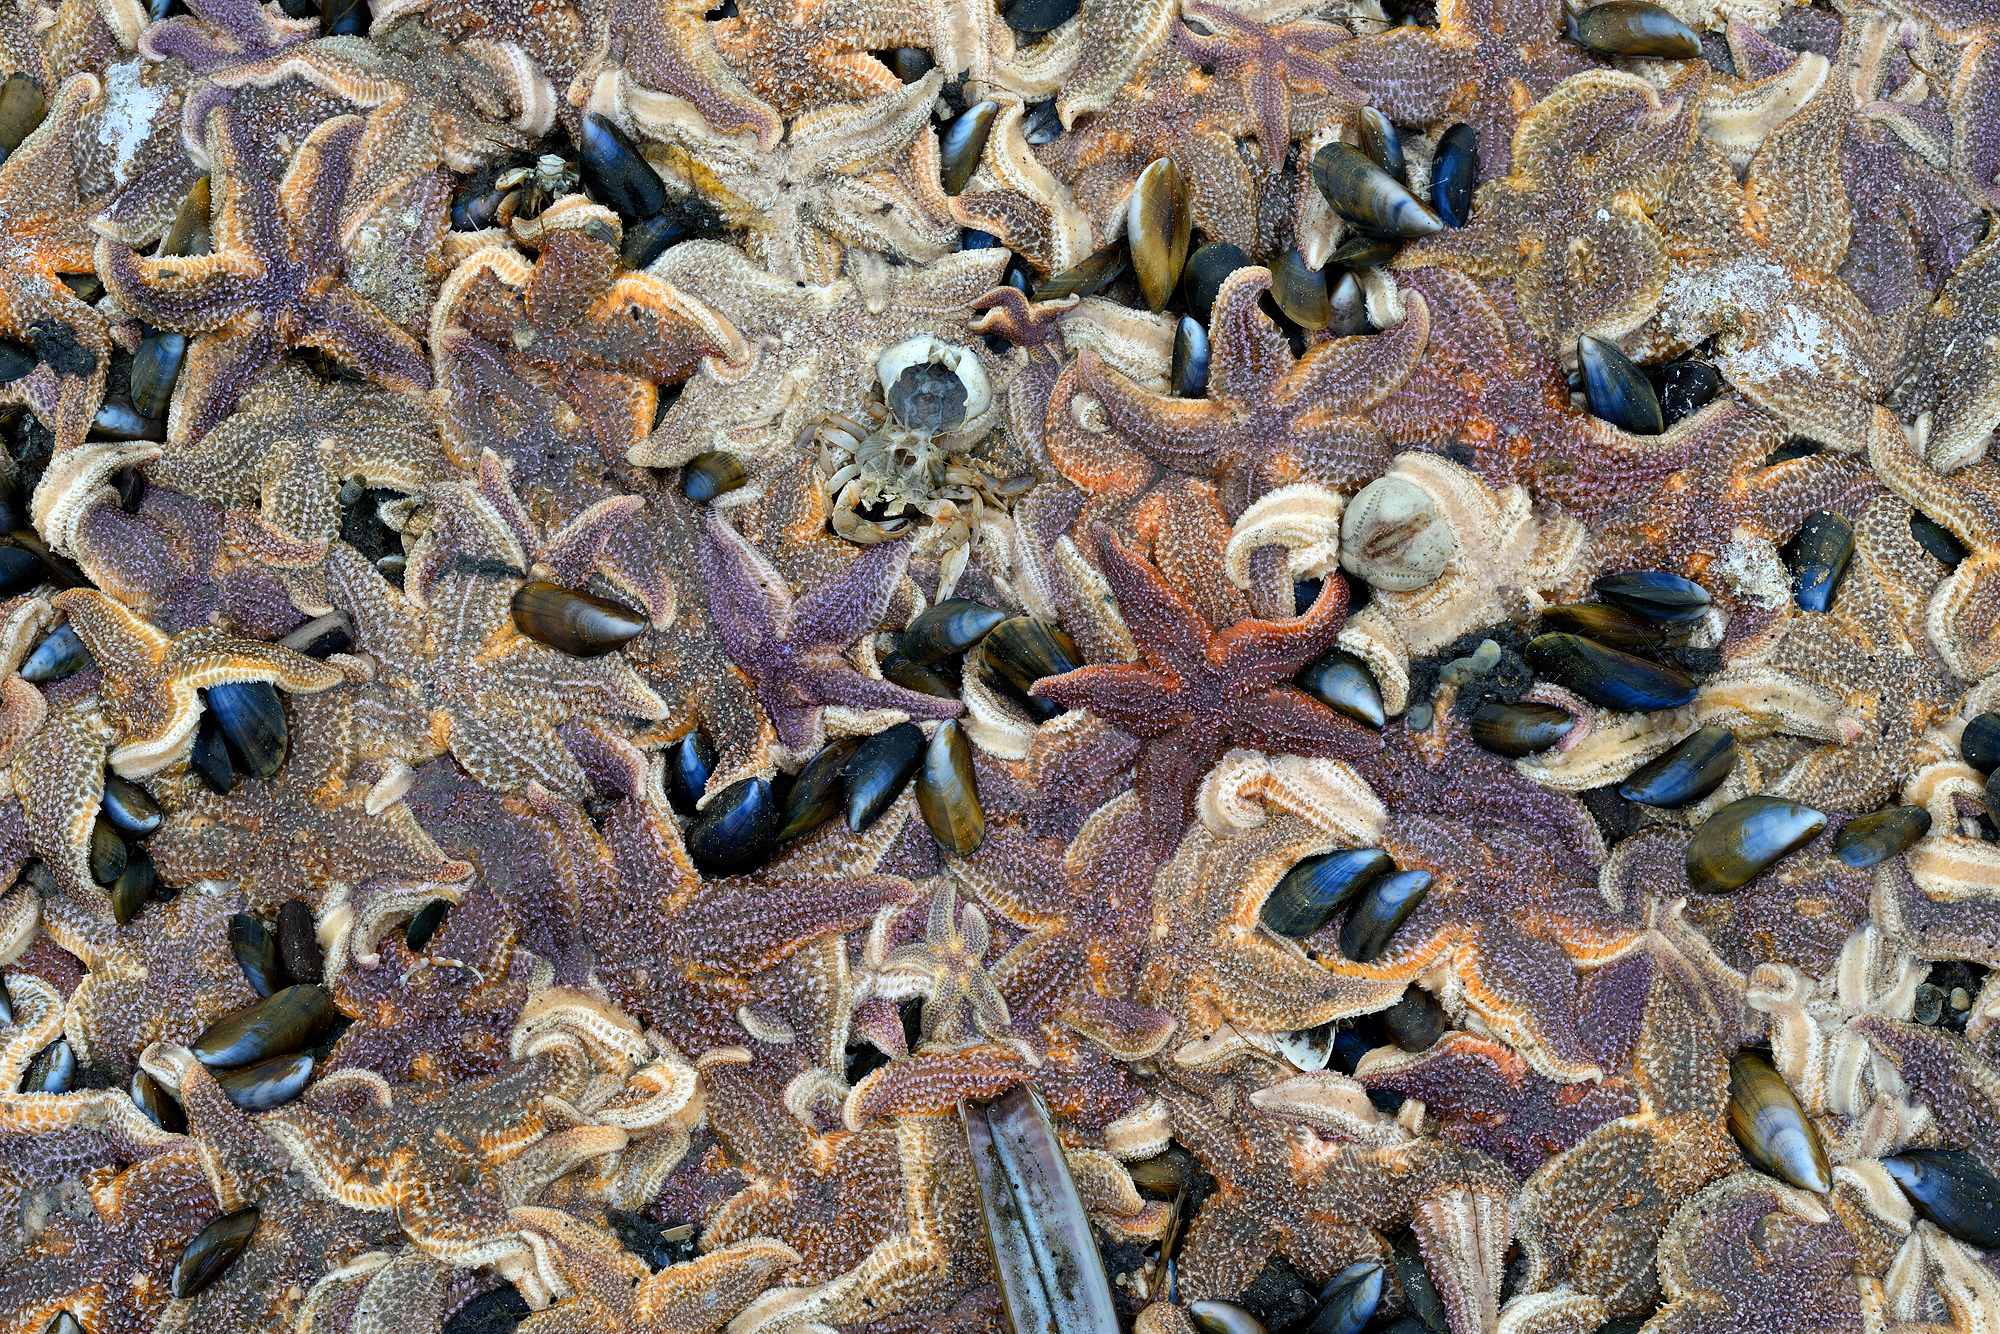 Opeengepakte massa van aangespoelde zeesterren (Asterias rubens) langs de vloedlijn na winterstorm op het strand van Wijk aan Zee